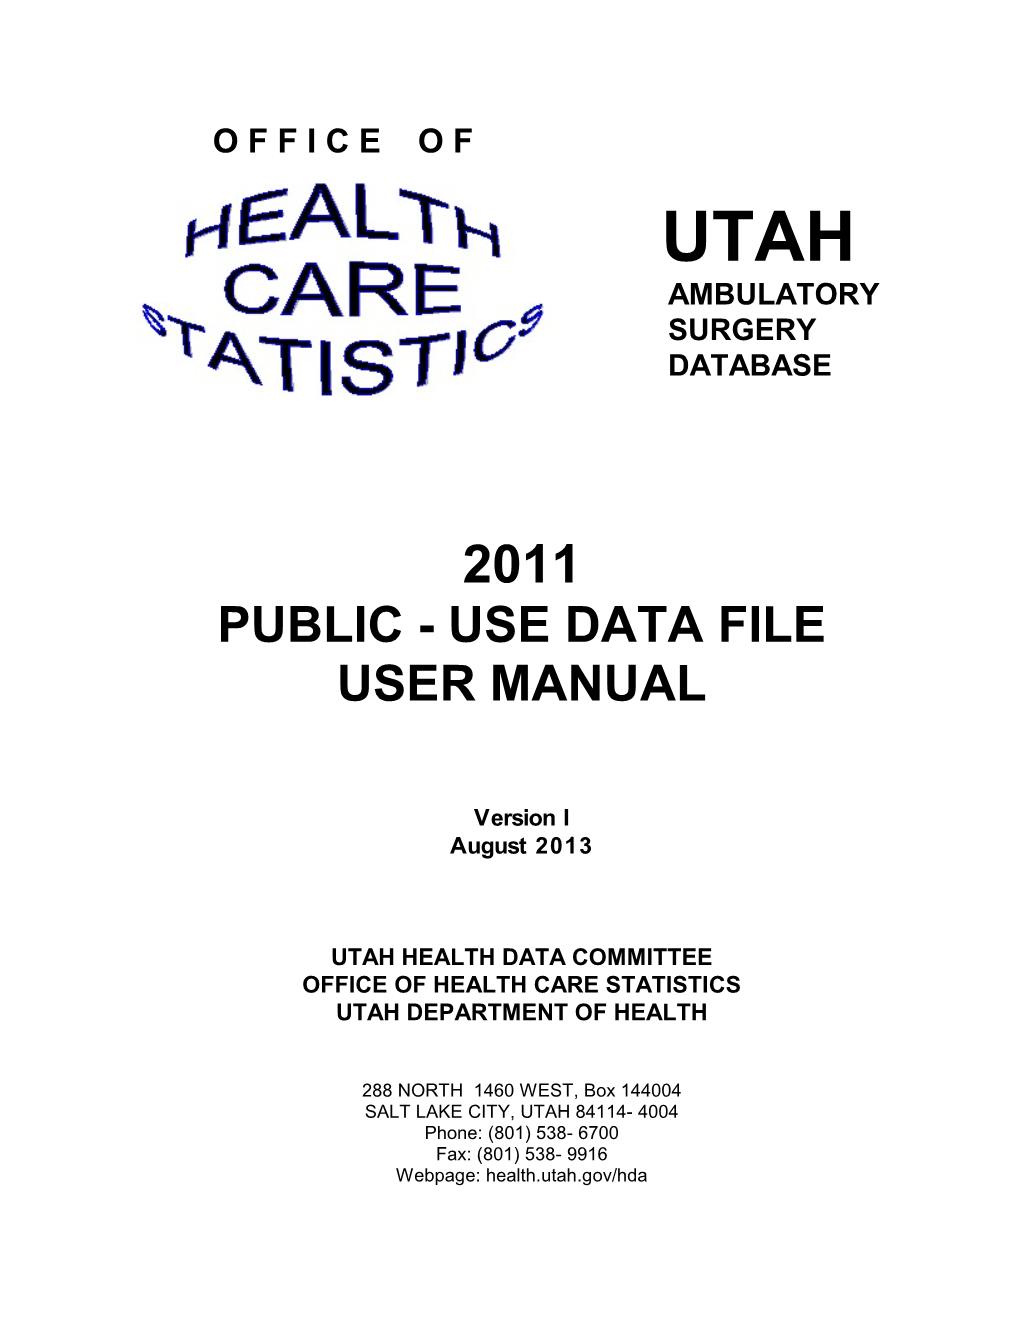 Public - Use Data File User Manual